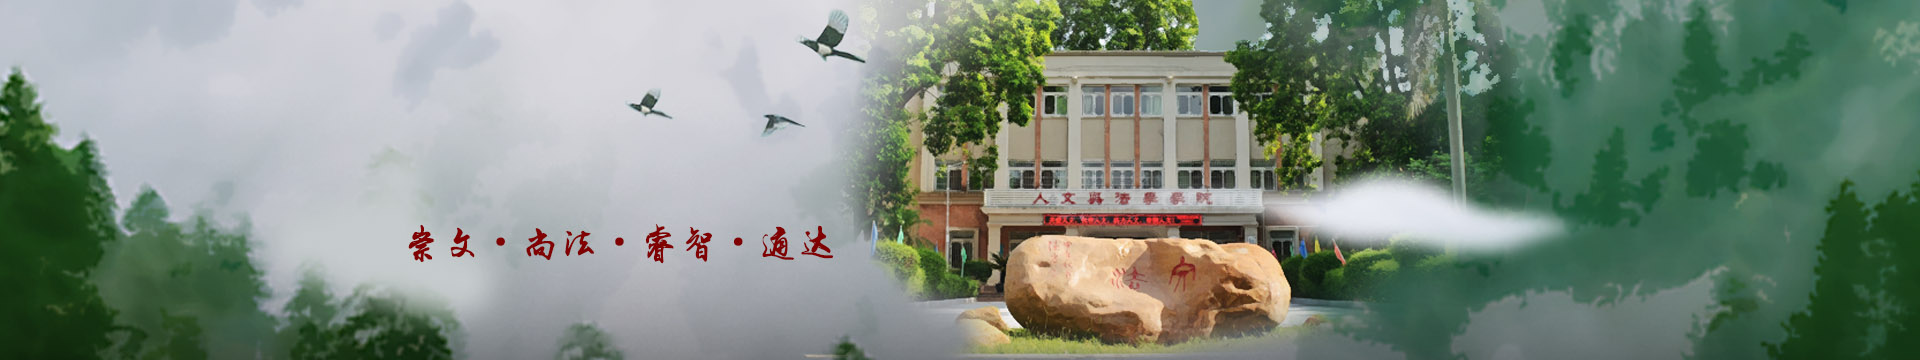 華南農業大學人文與法學學院